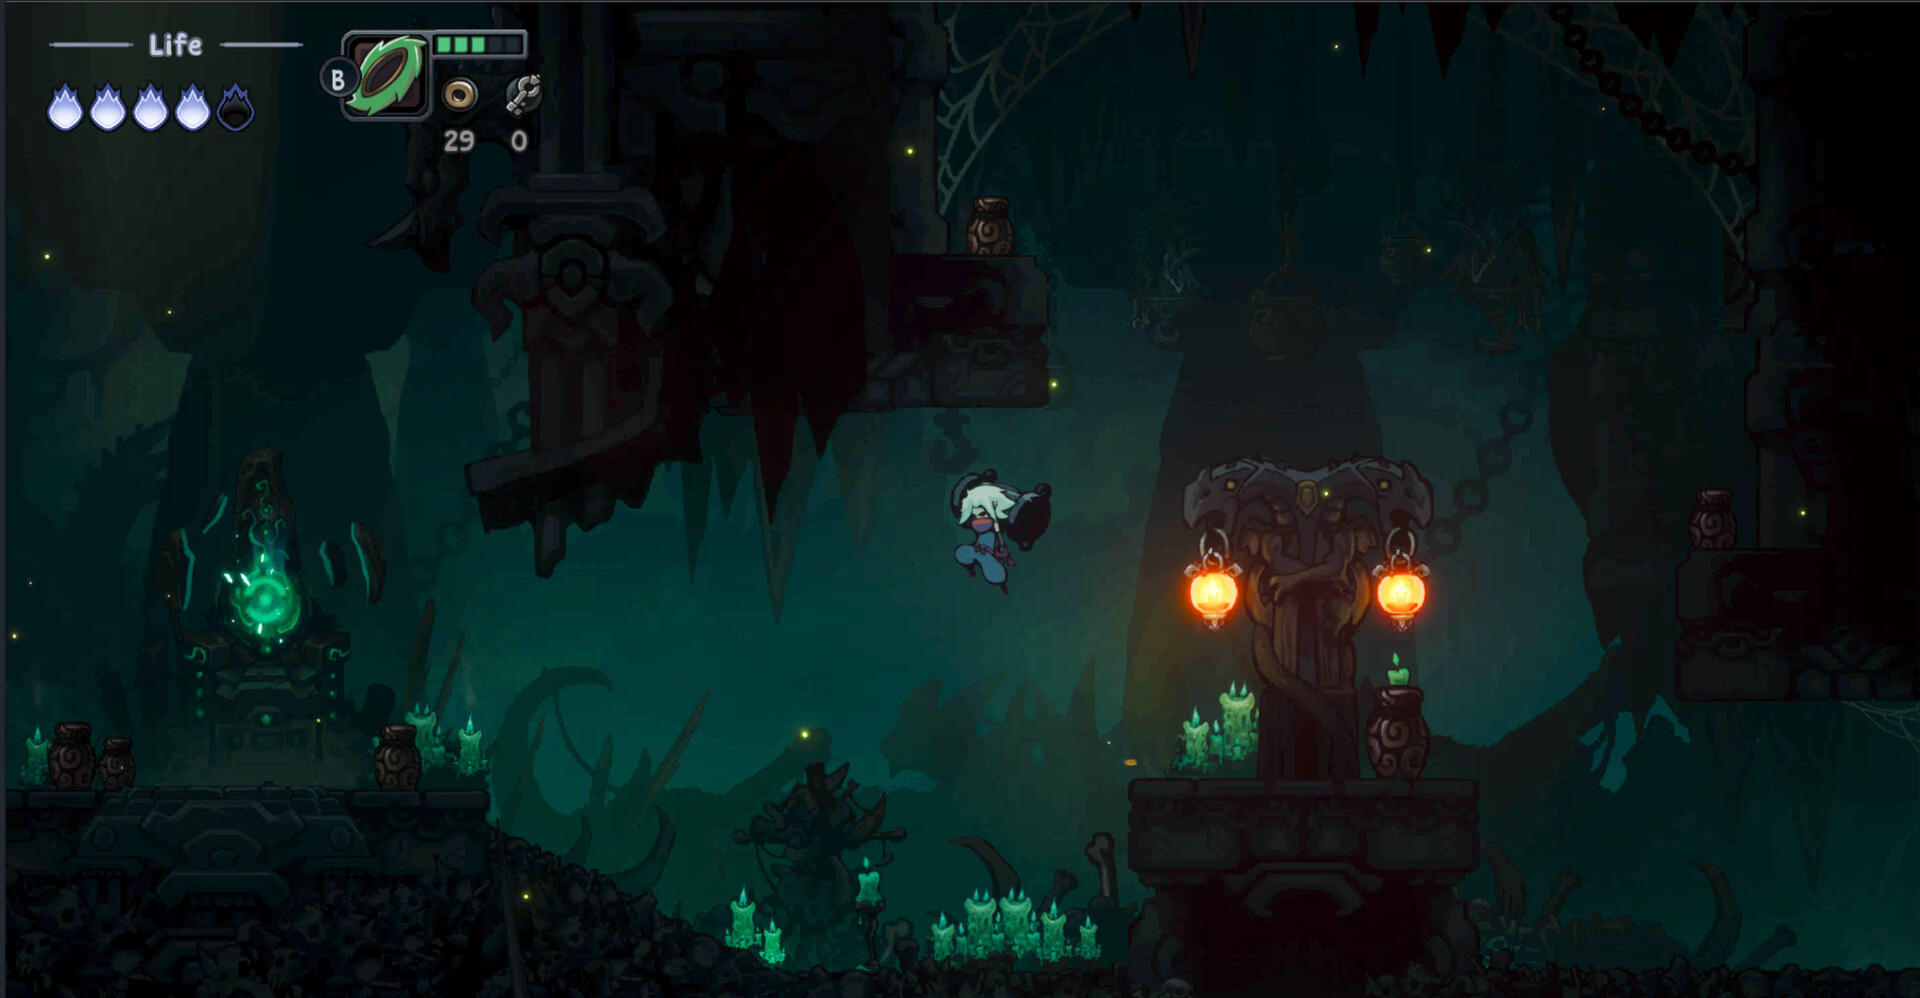 Twilight Monk screenshot game